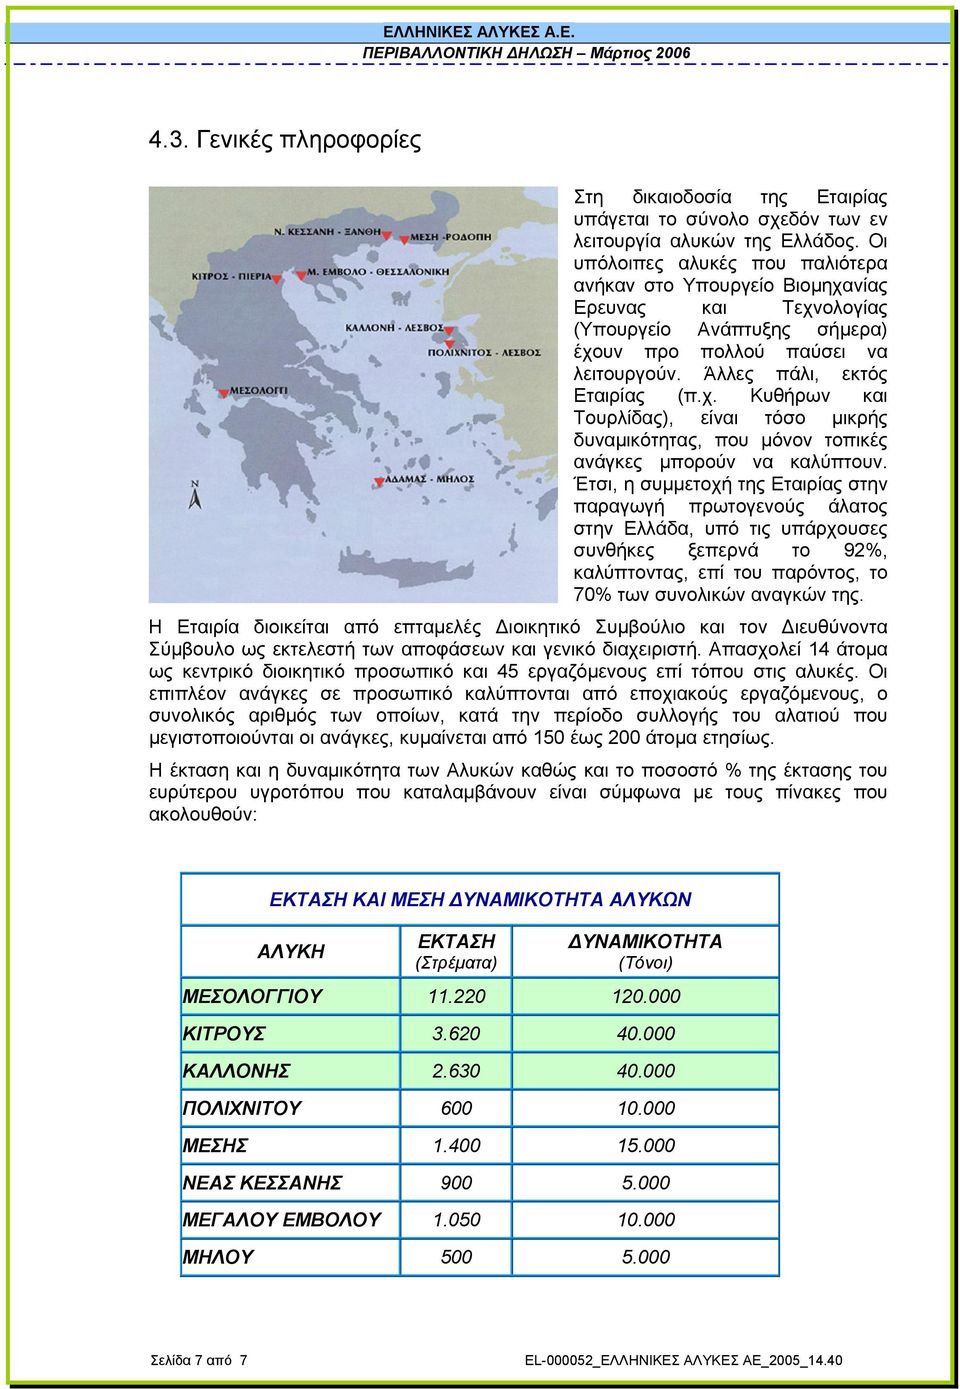 Έτσι, η συµµετοχή της Εταιρίας στην παραγωγή πρωτογενούς άλατος στην Ελλάδα, υπό τις υπάρχουσες συνθήκες ξεπερνά το 92%, καλύπτοντας, επί του παρόντος, το 70% των συνολικών αναγκών της.